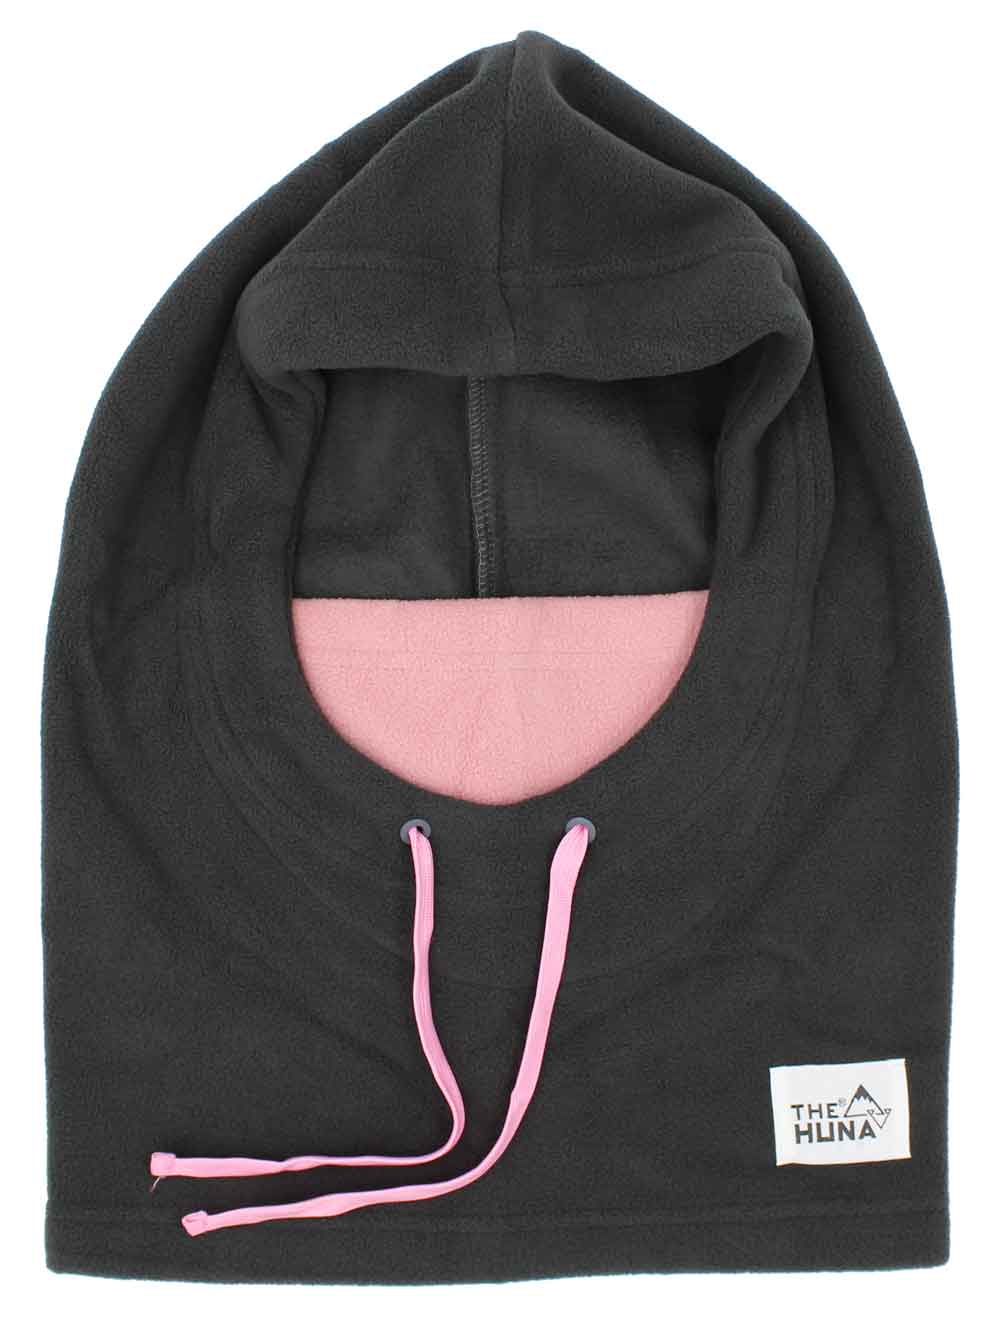 Grey with Pink Mouth & Pink Strings - Normal Fleece Helmet Hoodie